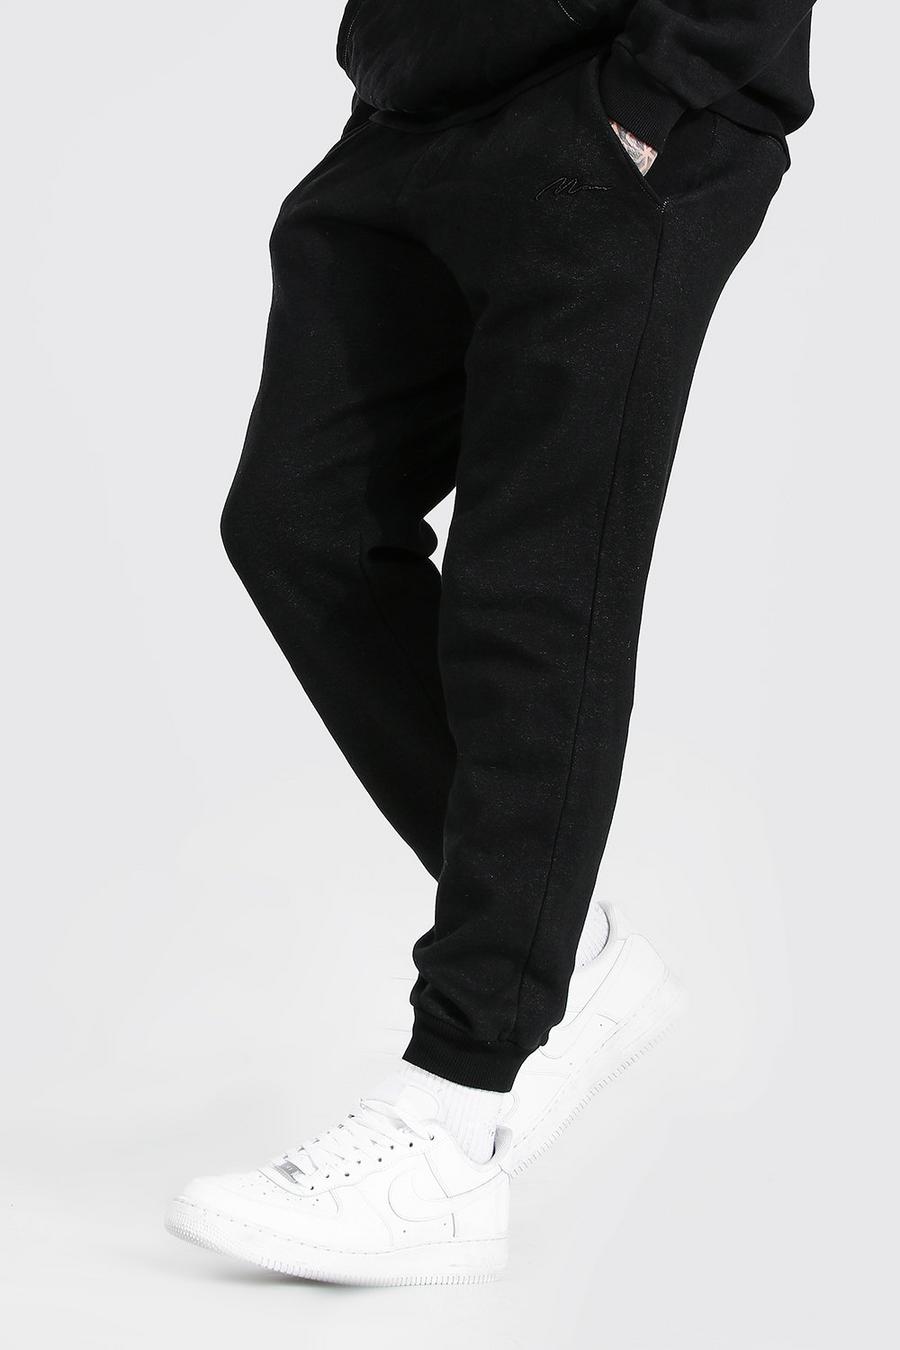 Pantaloni tuta taglio regular effetto consumato con firma MAN, Nero effetto lavato image number 1